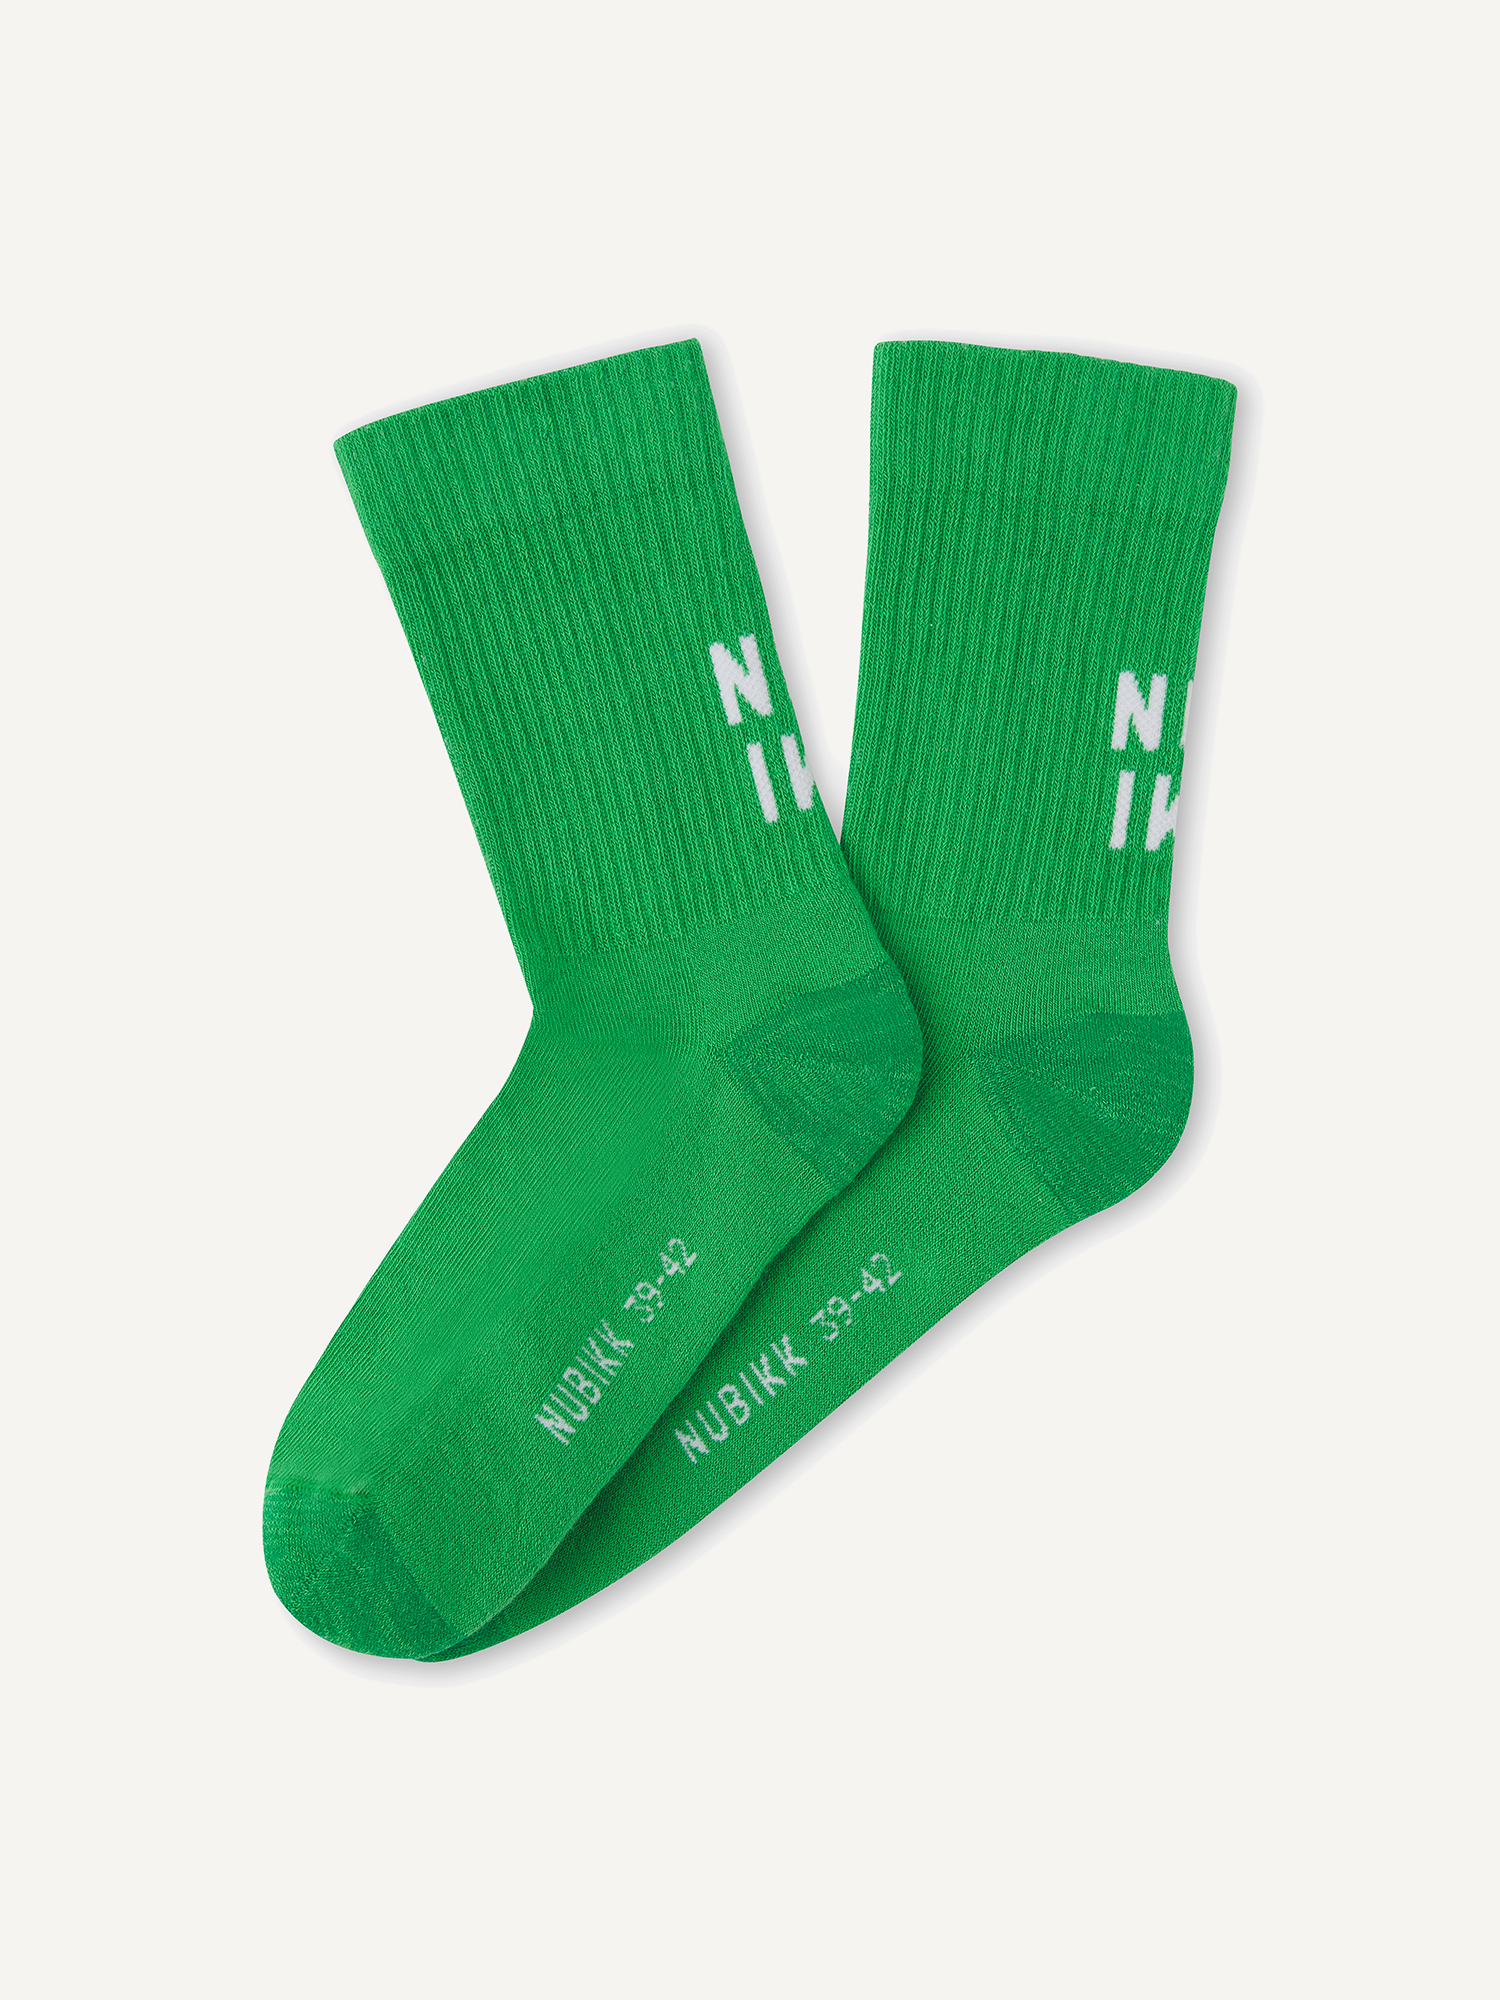 Nova Socks | Green socks for men